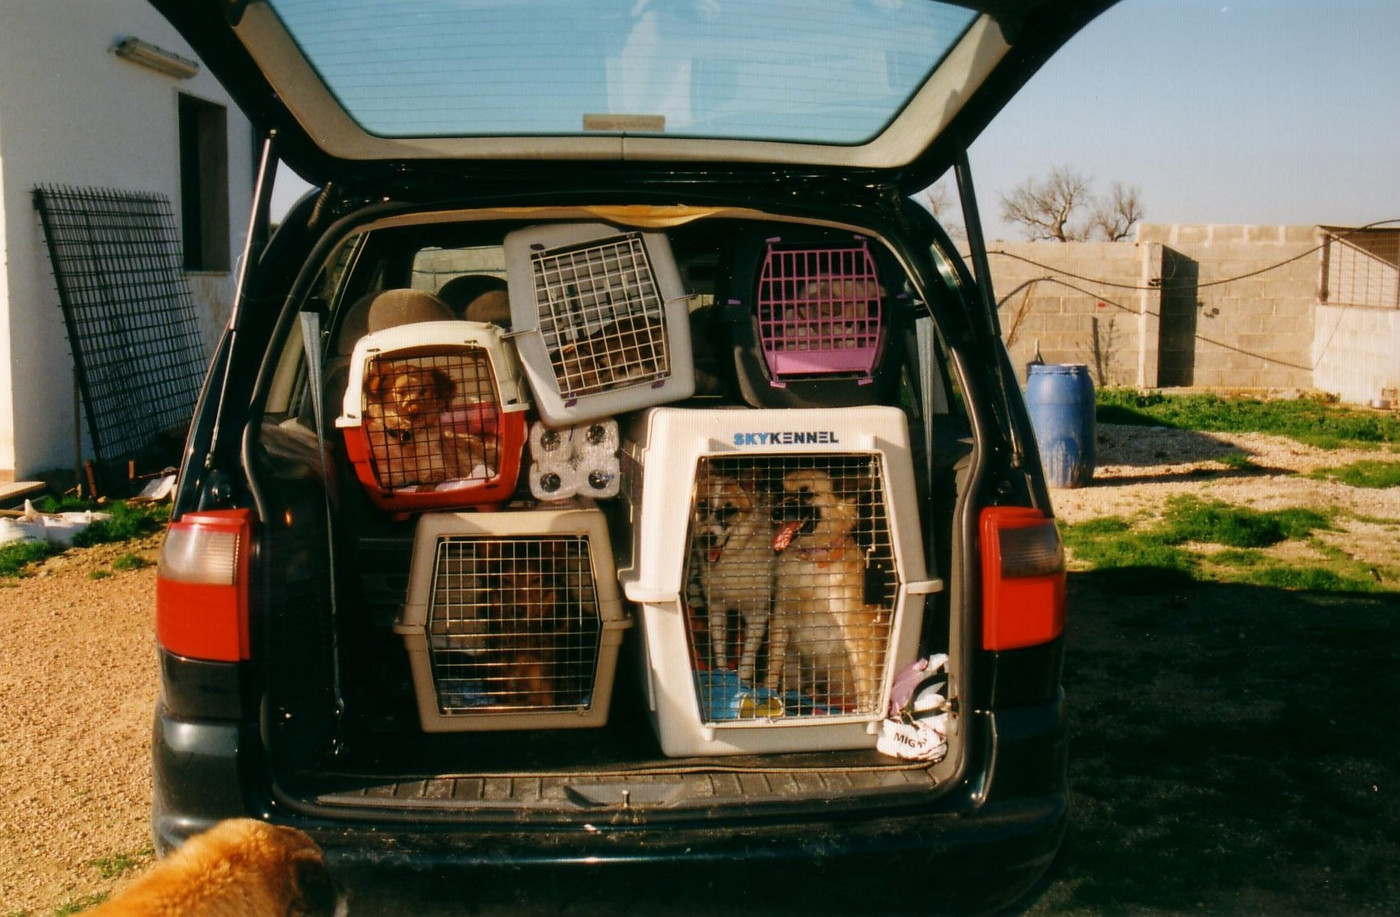 Ferien mit den Vierbeinern: Eine hundegerechte Einrichtung im Auto ist wichtig. Diese ist im Bild nicht der Fall. Bei hohen Temperaturen sollten Hunde nicht im heissen Auto warten müssen.